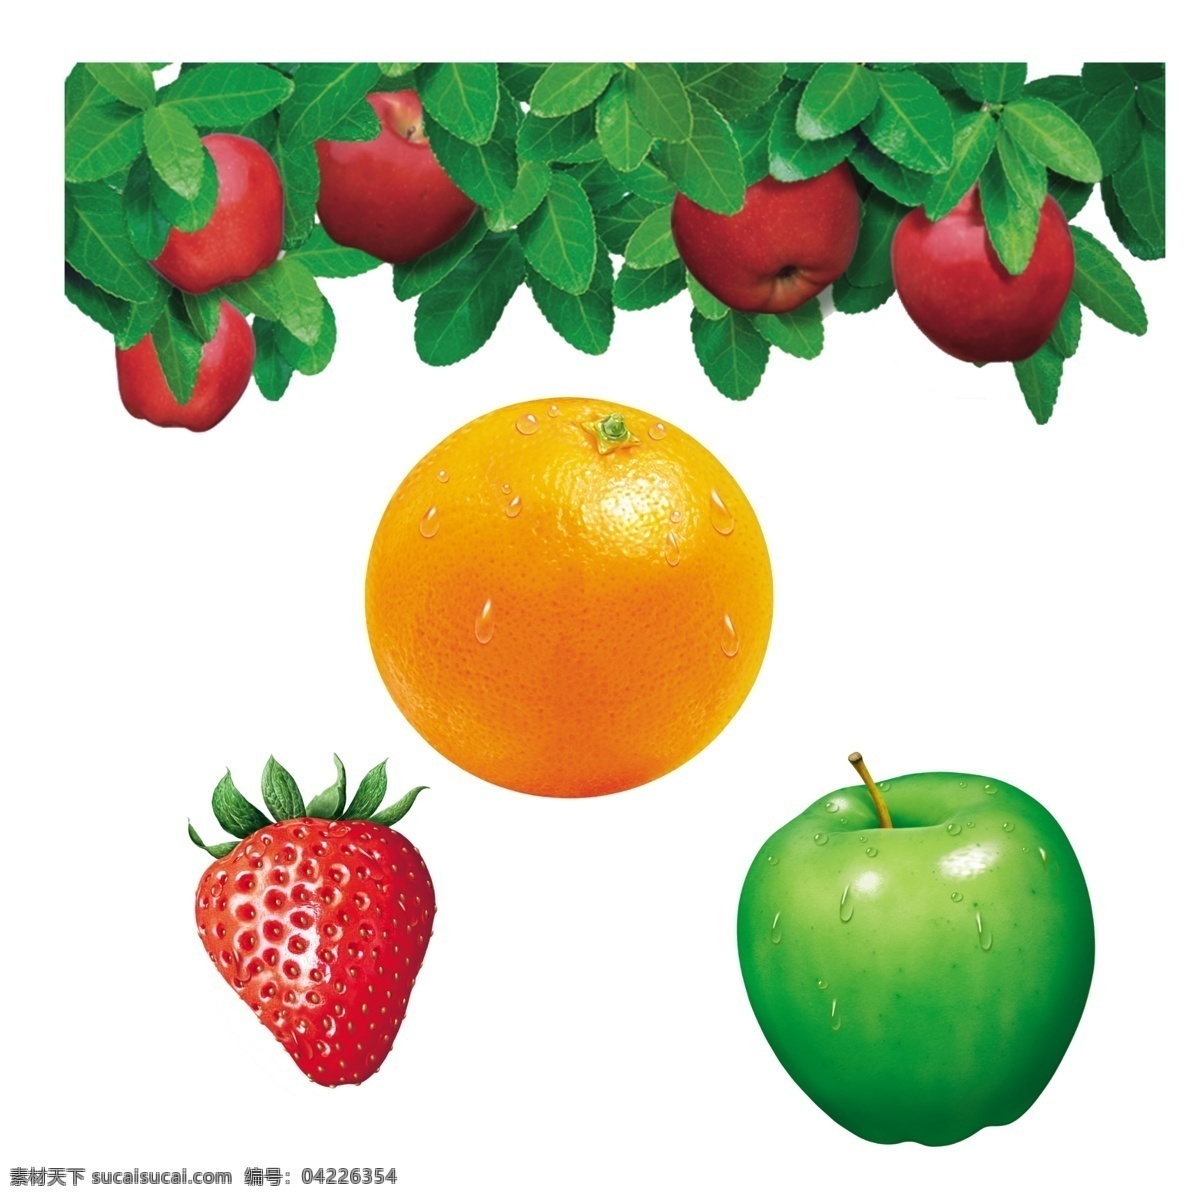 苹果 橙子 草莓 苹果橙子草莓 高清水果图 psd源文件